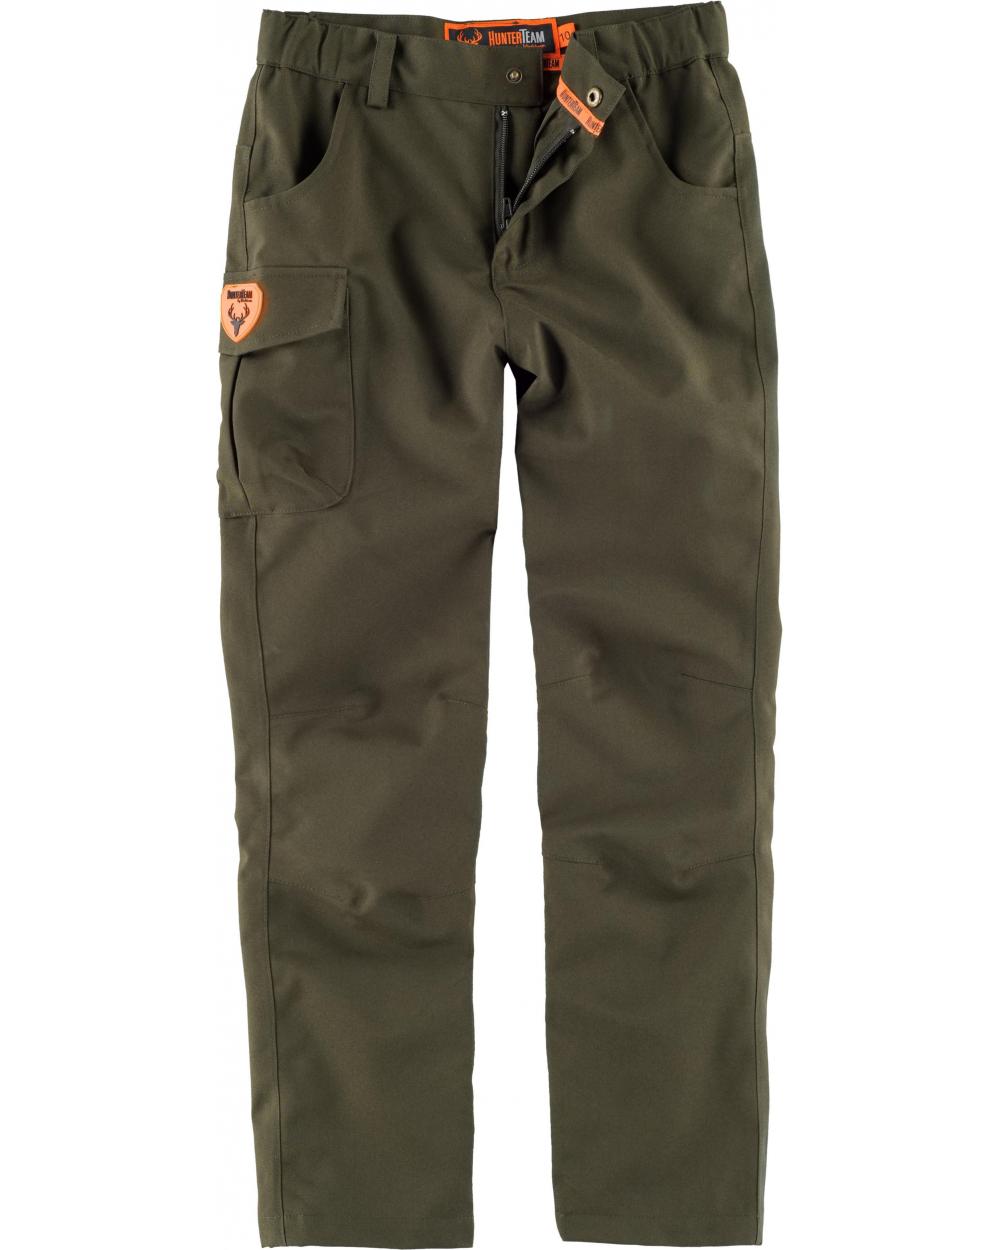 Pantalon de caza impermeable para niño S8110